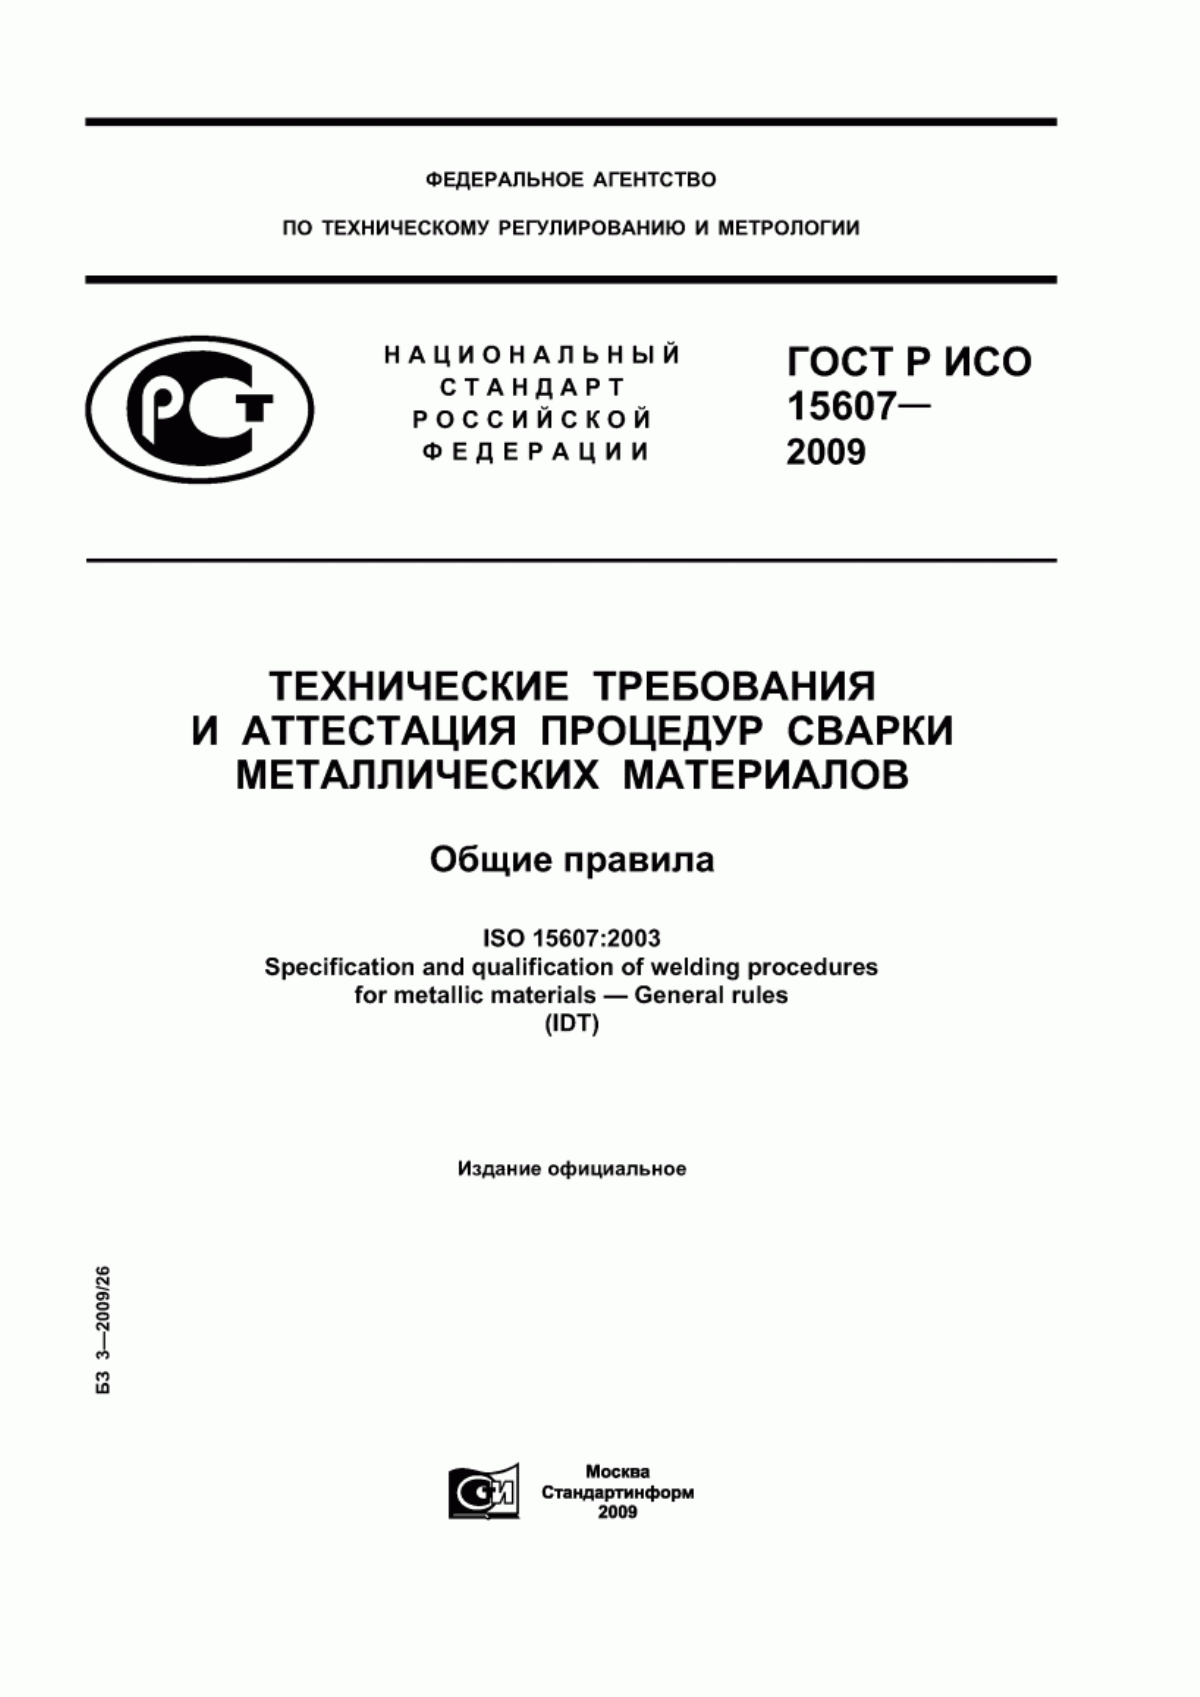 ГОСТ Р ИСО 15607-2009 Технические требования и аттестация процедур сварки металлических материалов. Общие правила